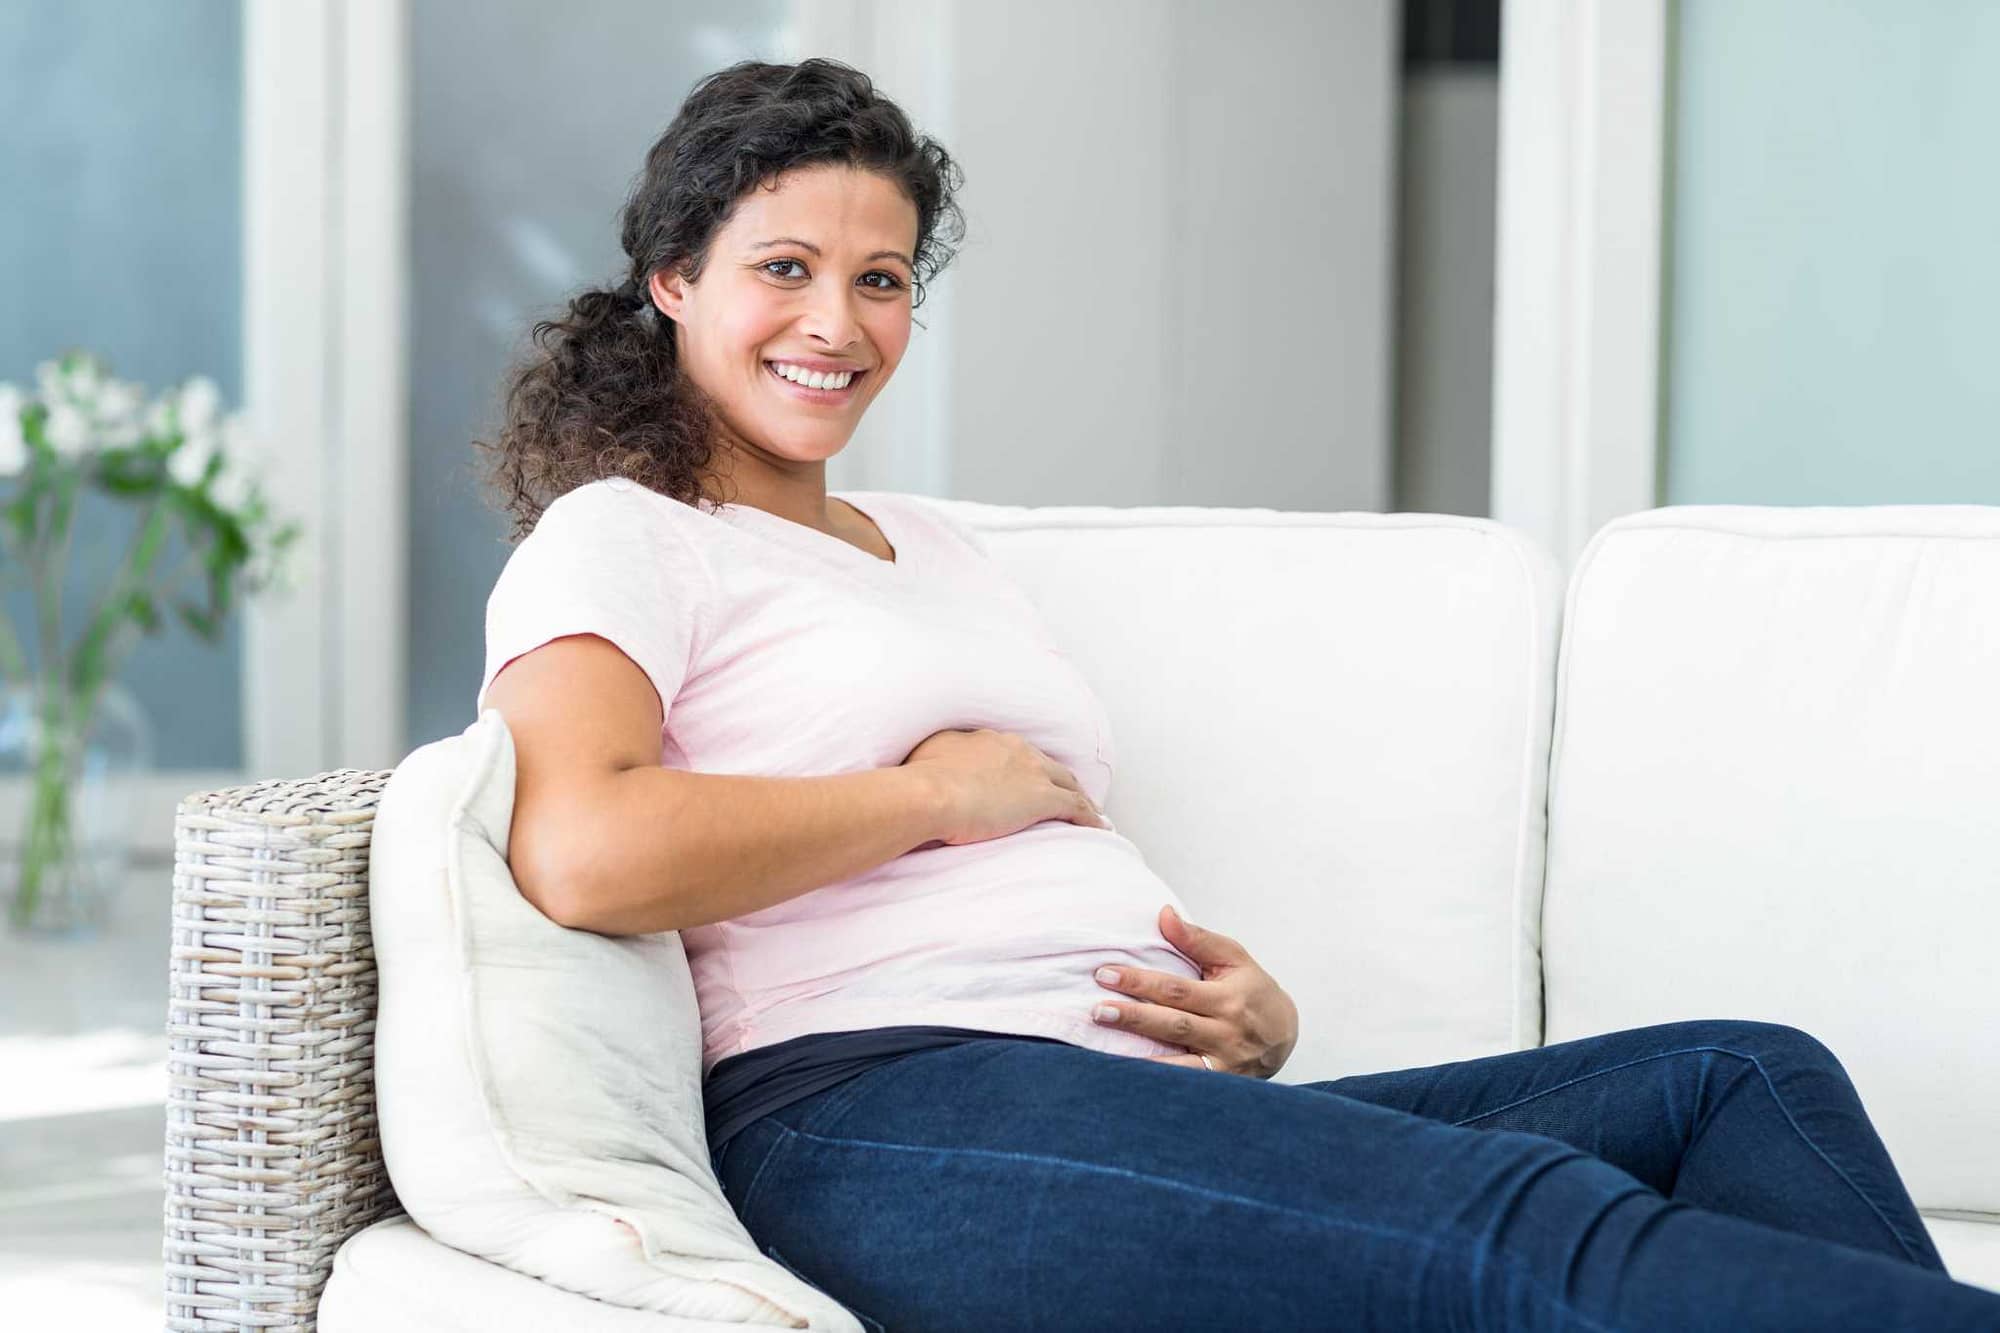 gestational surrogacy in california